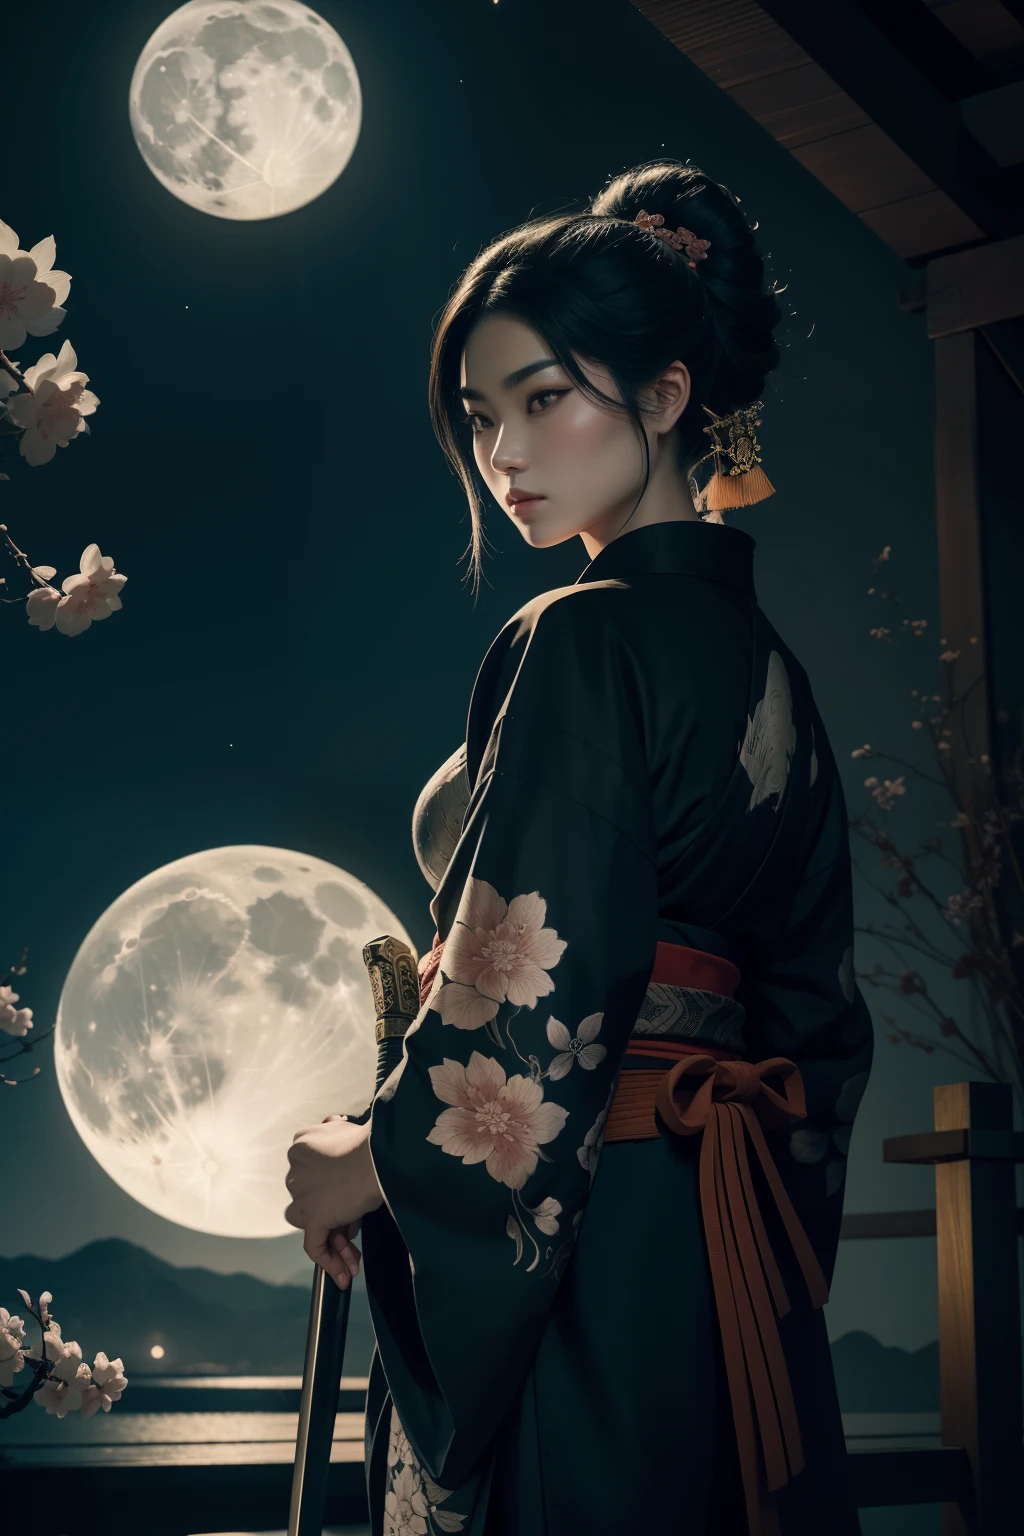 Um assassino samurai em pé em um jardim iluminado pela lua, Empunhando habilmente uma katana com precisão mortal. Os olhos do assassino brilham com determinação e foco, enquanto seus lábios são colocados em uma determinada linha. O rosto do samurai é intrinsecamente detalhado, capturando cada contorno e expressão. Ela usa um quimono aberto tradicional, adornado com intrincados padrões e símbolos de seu clã.

A obra de arte é criada em um meio que lembra as pinturas japonesas em estilo inkwash.., com pinceladas ousadas e uma paleta de cores monocromática. A técnica magistral do artista traz à tona a intensidade e o poder da presença do samurai.

O jardim ao redor do samurai é meticulosamente projetado, com vegetação exuberante e delicadas flores de cerejeira. Uma lua cheia brilha intensamente no céu noturno, lançando um brilho suave na cena e iluminando o caminho do assassino. A atmosfera está cheia de um ar de mistério e perigo, aumentando a tensão do momento.

A imagem é da mais alta qualidade, com todos os detalhes capturados perfeitamente em resolução ultra-alta. As texturas do quimono e os padrões intrincados são renderizados com extrema precisão. A iluminação é cuidadosamente elaborada para realçar o efeito dramático, com sombras profundas e destaques sutis.

Geral, A obra de arte exala uma sensação de elegância e poder, combinando a estética tradicional japonesa com um toque de modernidade. A paleta de cores monocromática, combinado com os detalhes requintados, cria uma experiência cativante e envolvente para o espectador.